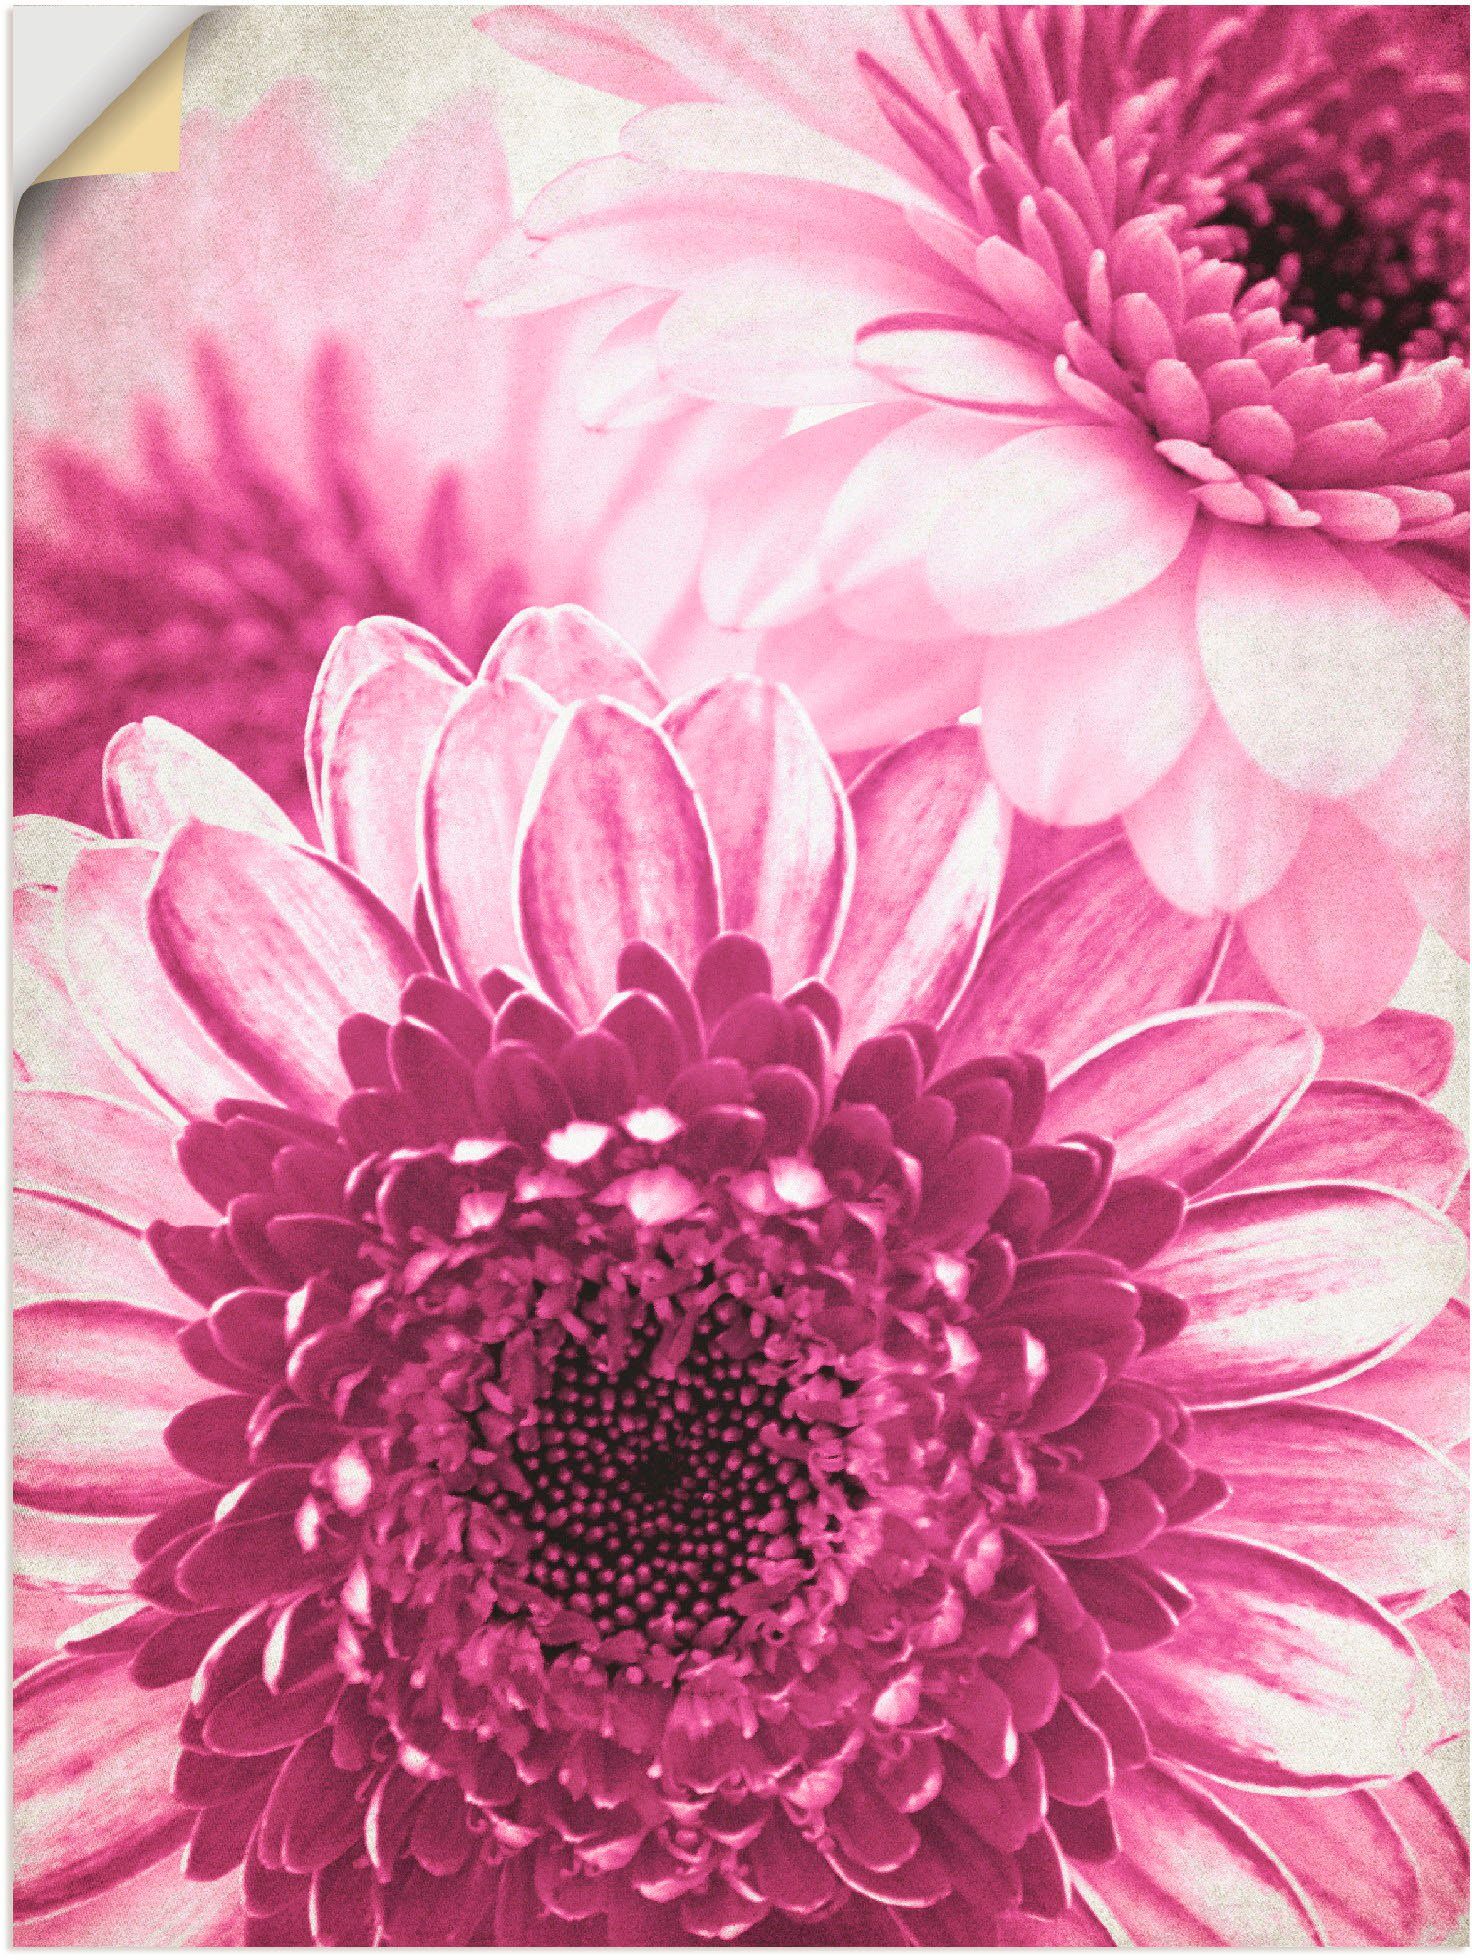 Artland Artprint Pinkkleurige gerbera in vele afmetingen & productsoorten -artprint op linnen, poster, muursticker / wandfolie ook geschikt voor de badkamer (1 stuk)